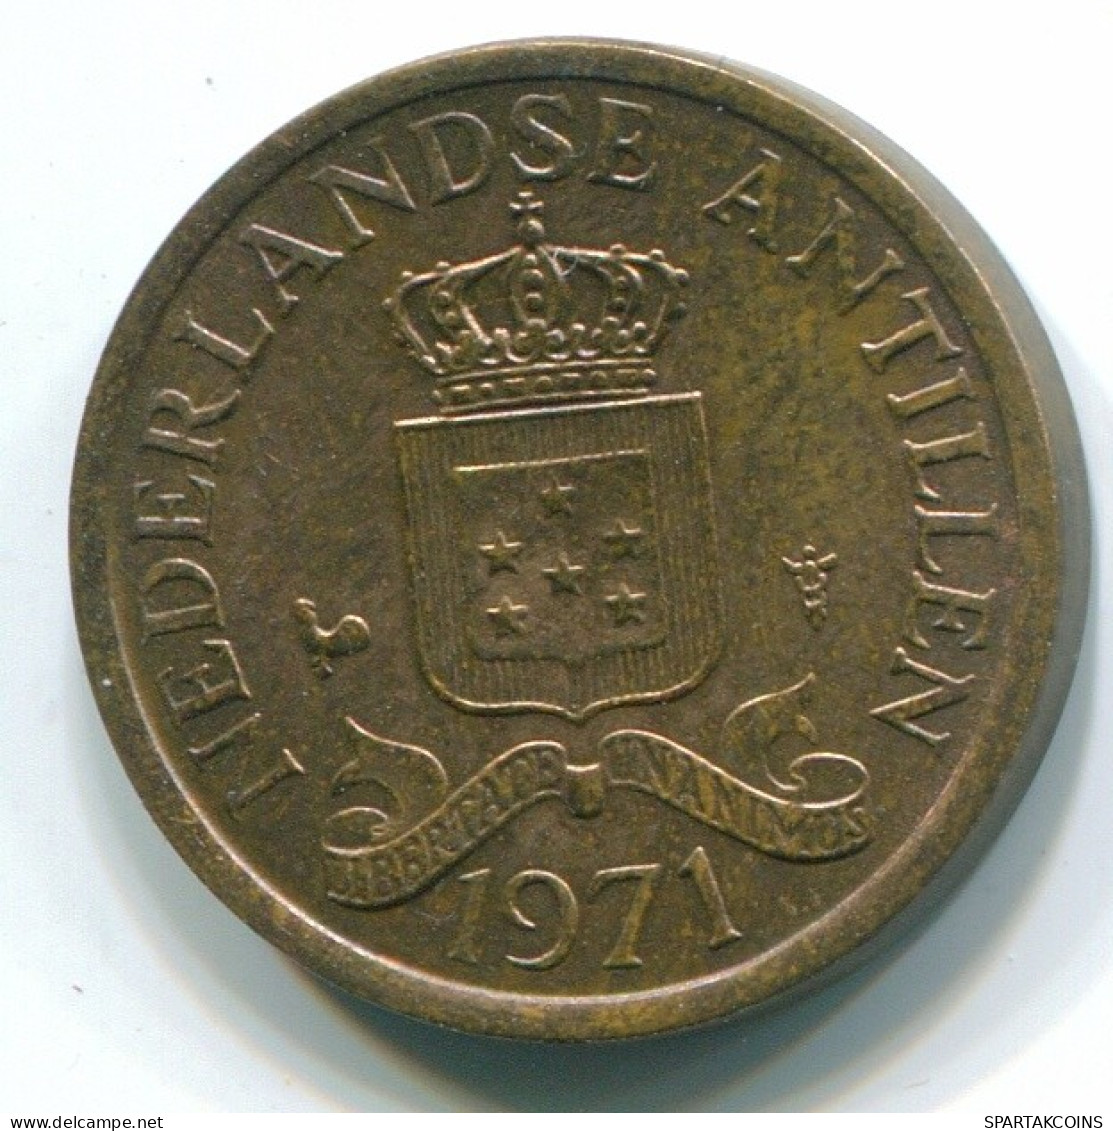 1 CENT 1971 NETHERLANDS ANTILLES Bronze Colonial Coin #S10627.U.A - Antilles Néerlandaises